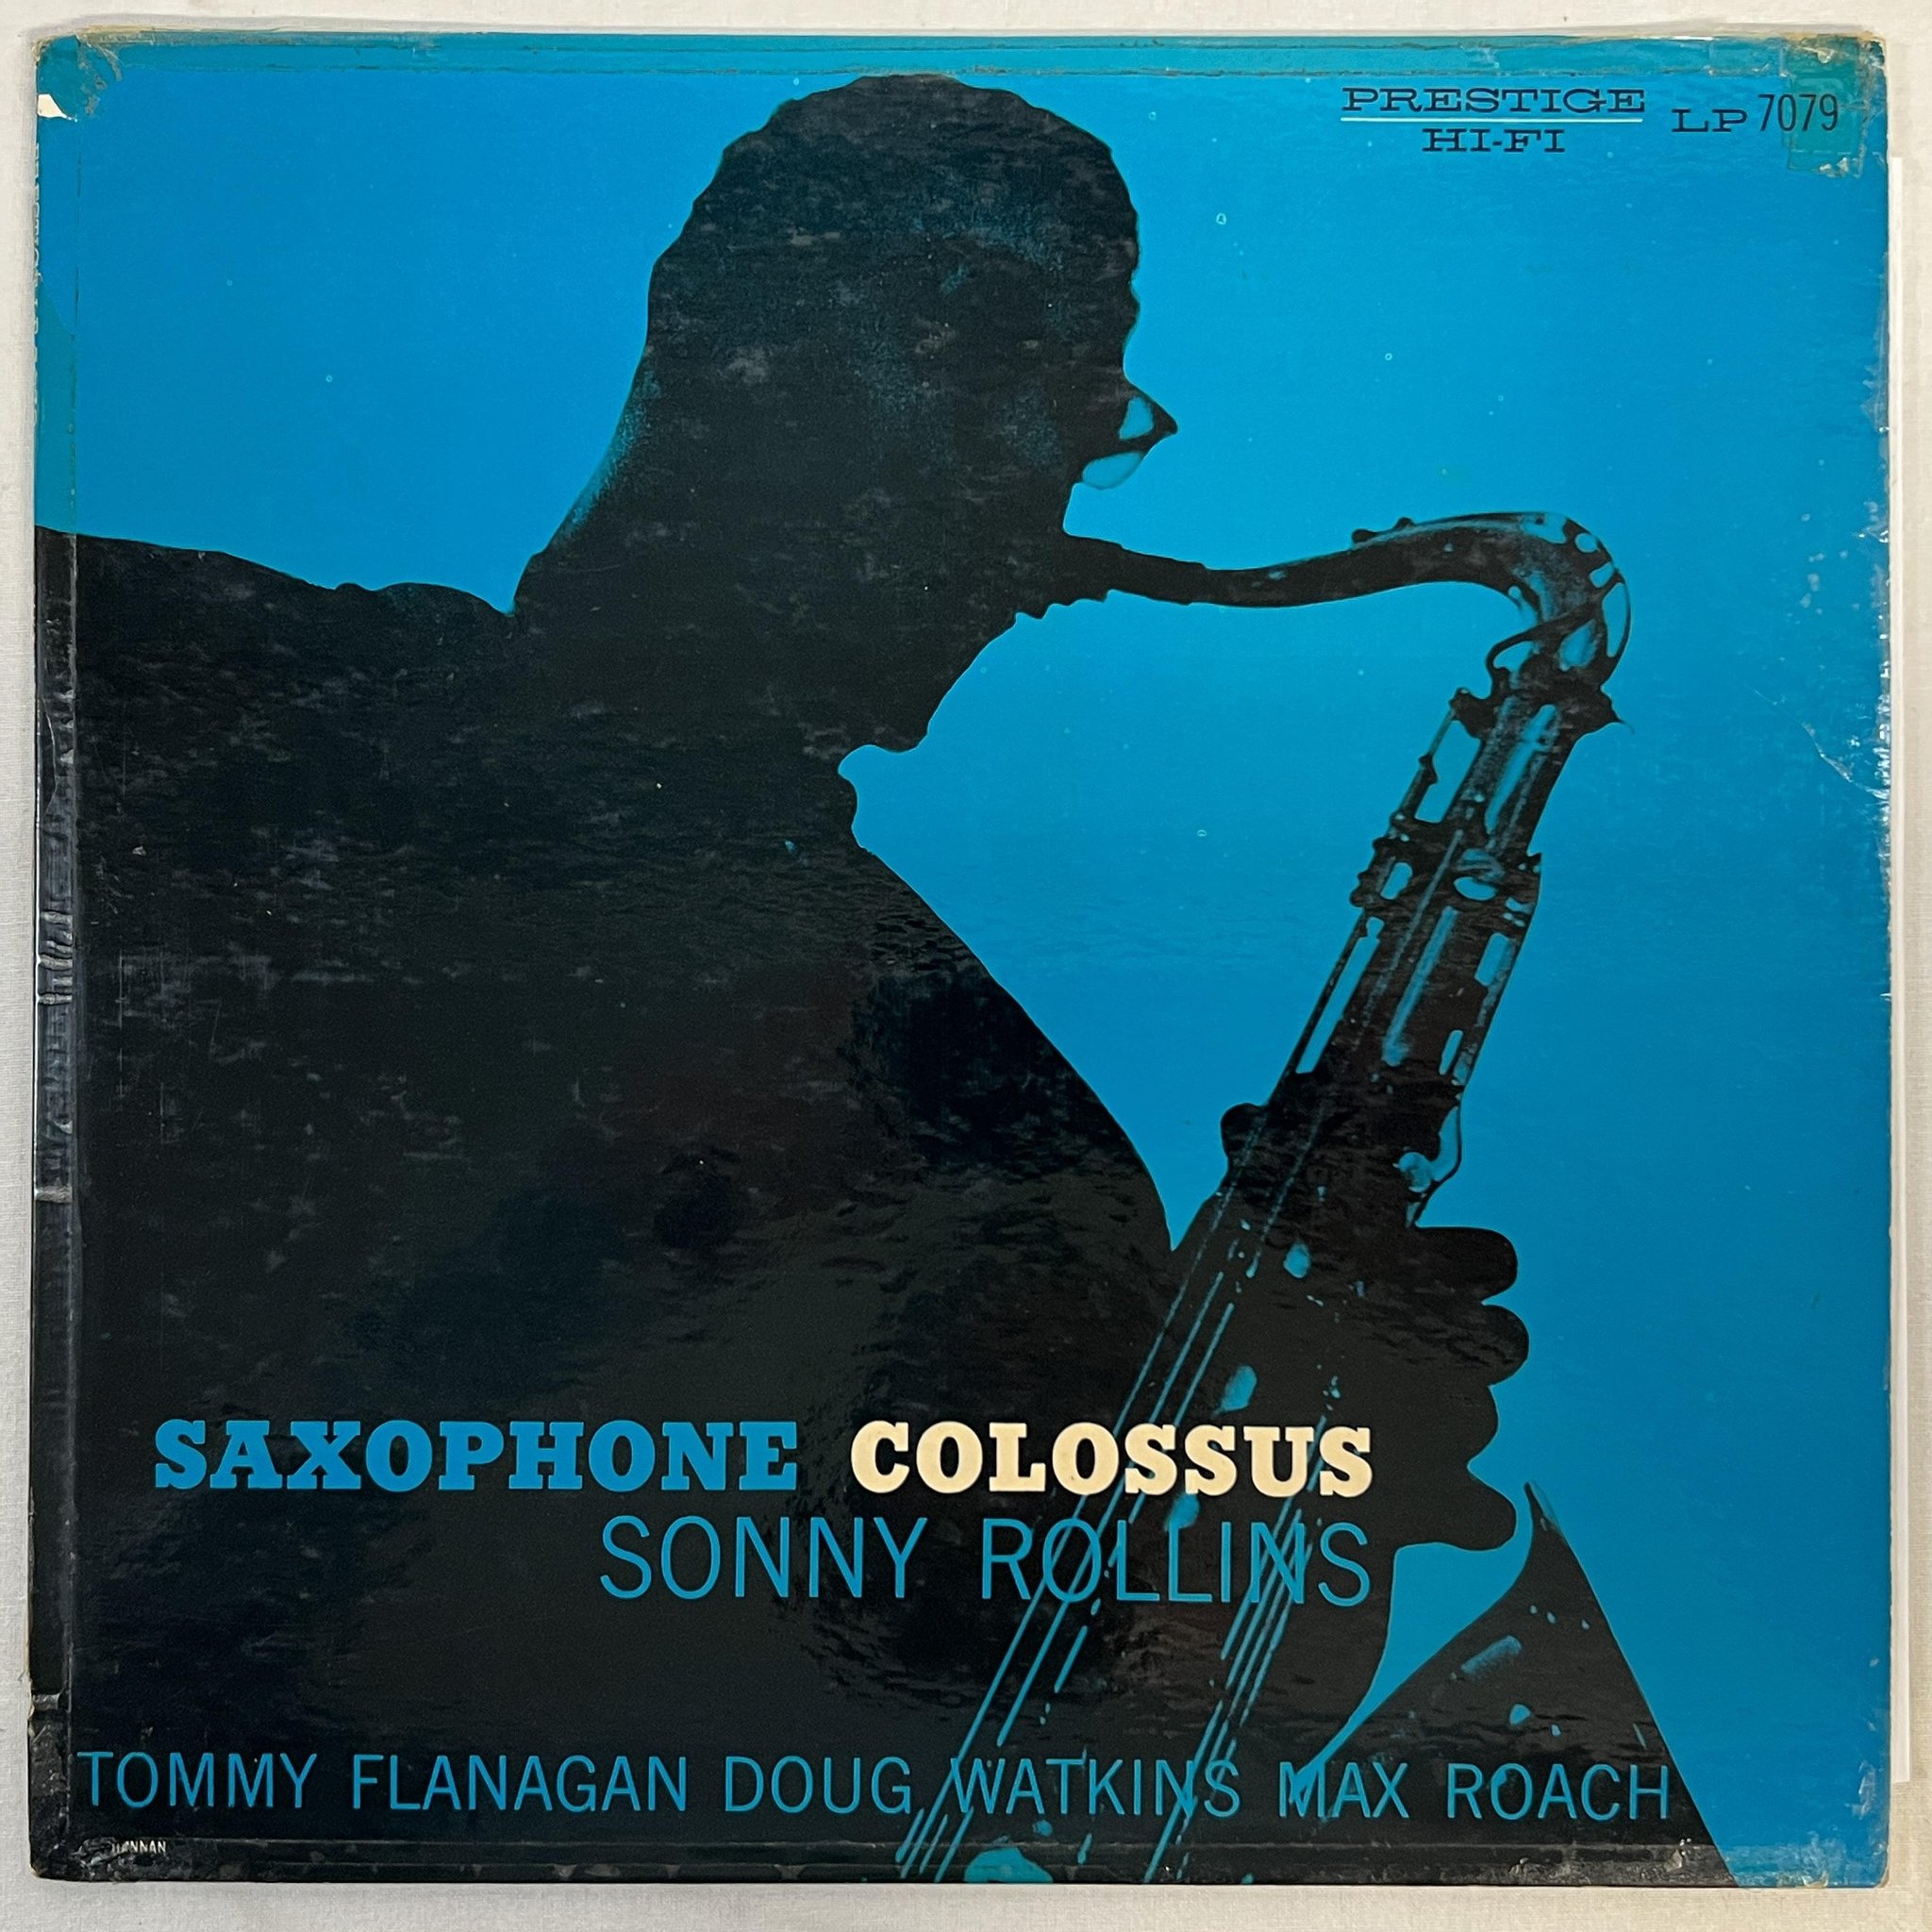 Omslagsbild för skivan SONNY ROLLINS FOUR saxophone colossus LP -57 US PRESTIGE PRLP 7079 ** R A R E **